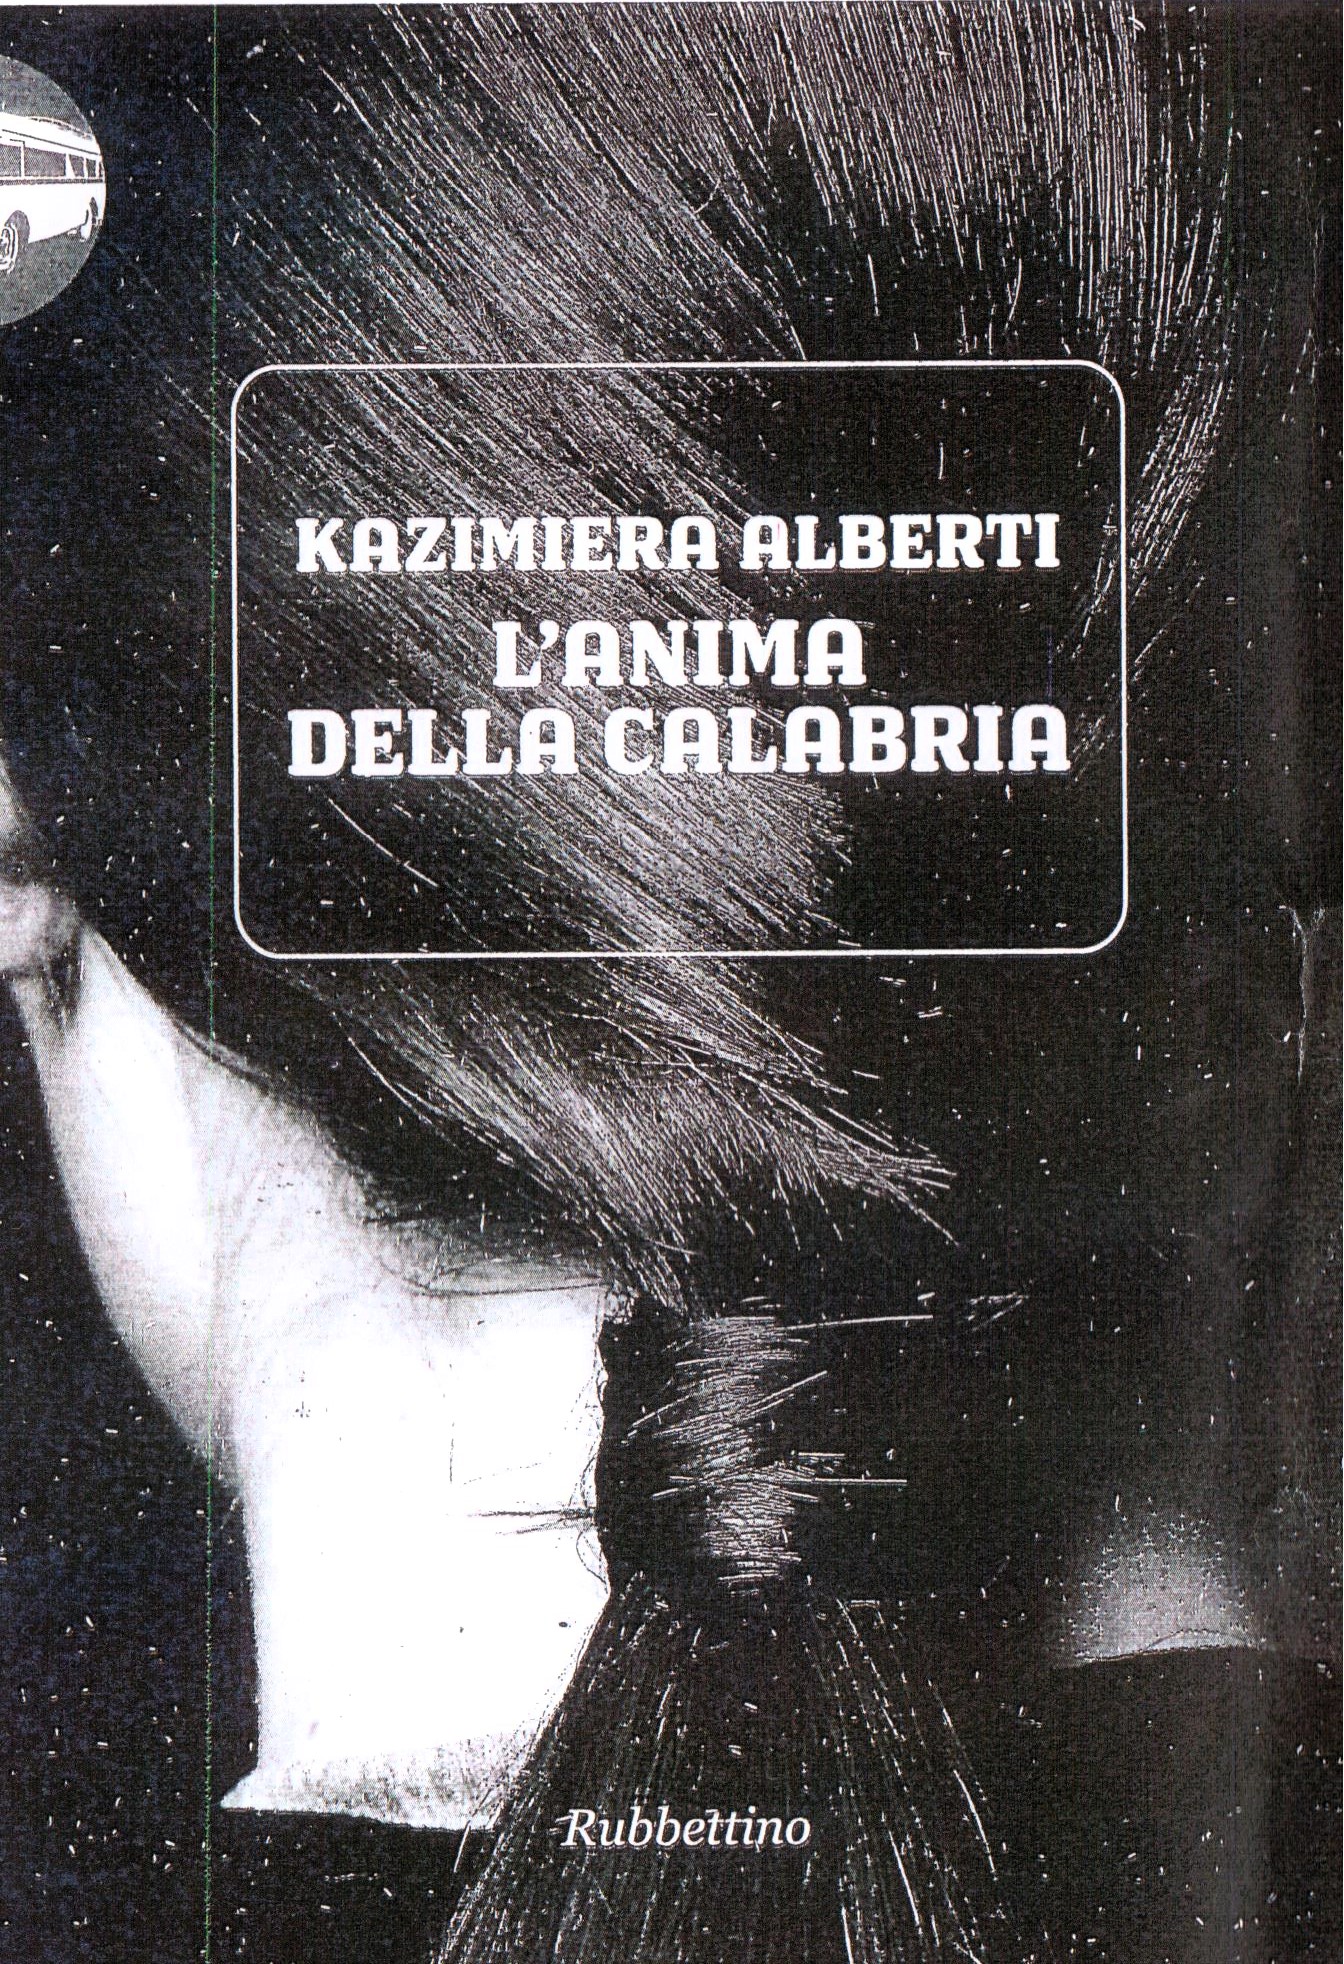 Fra le personalità letterarie in tour tantissimi anni fa a San Demetrio anche una donna: Kazimiera Alberti